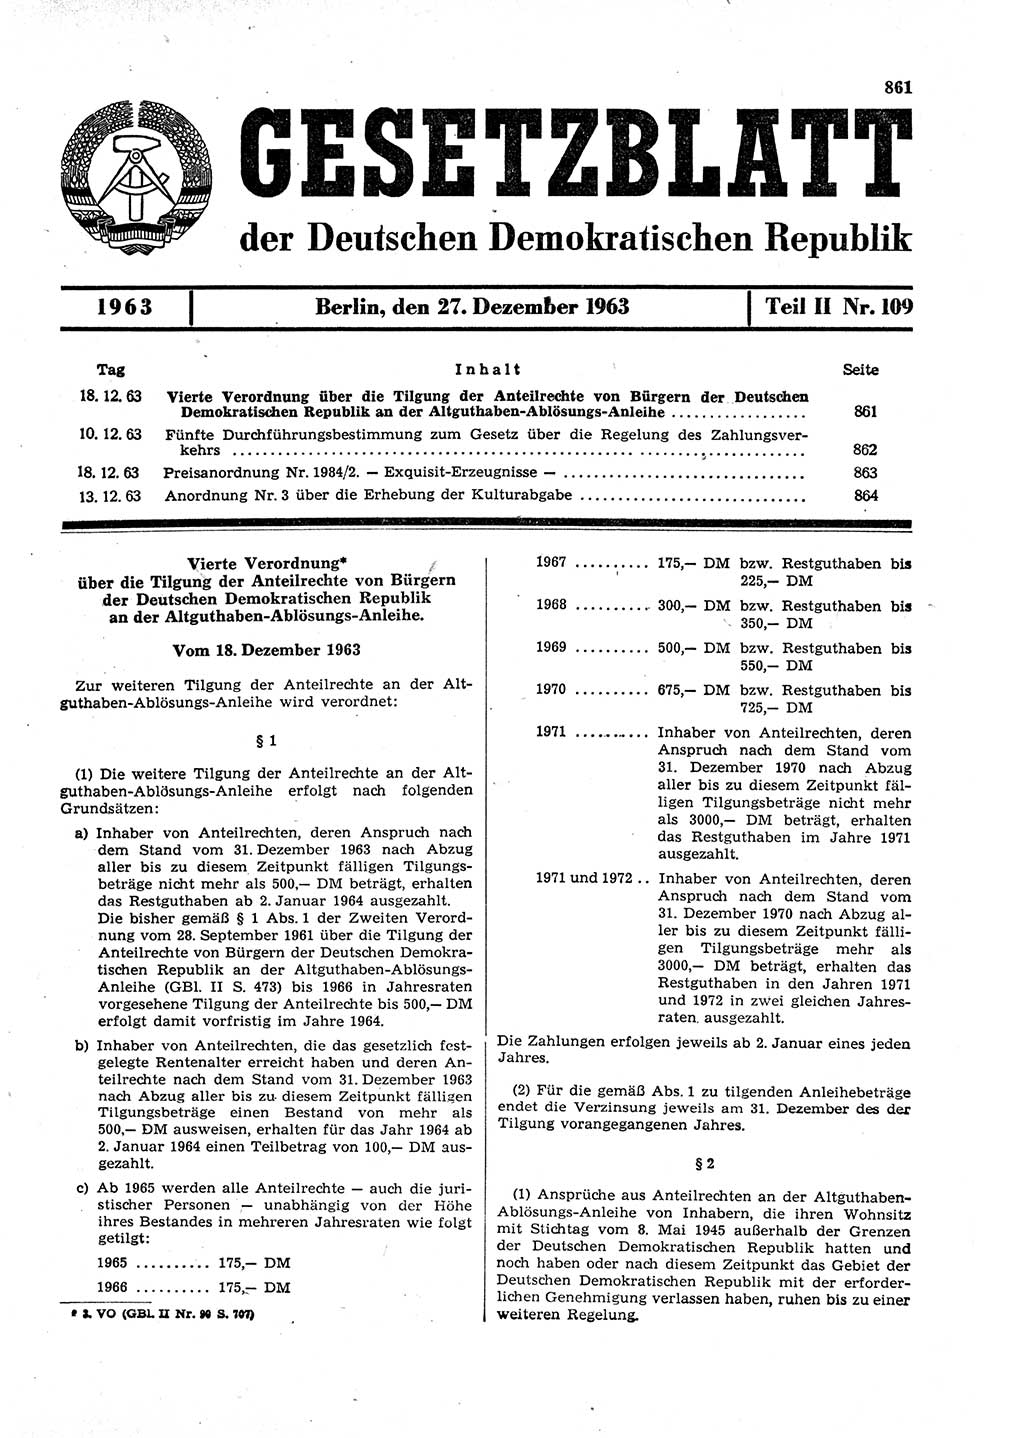 Gesetzblatt (GBl.) der Deutschen Demokratischen Republik (DDR) Teil ⅠⅠ 1963, Seite 861 (GBl. DDR ⅠⅠ 1963, S. 861)